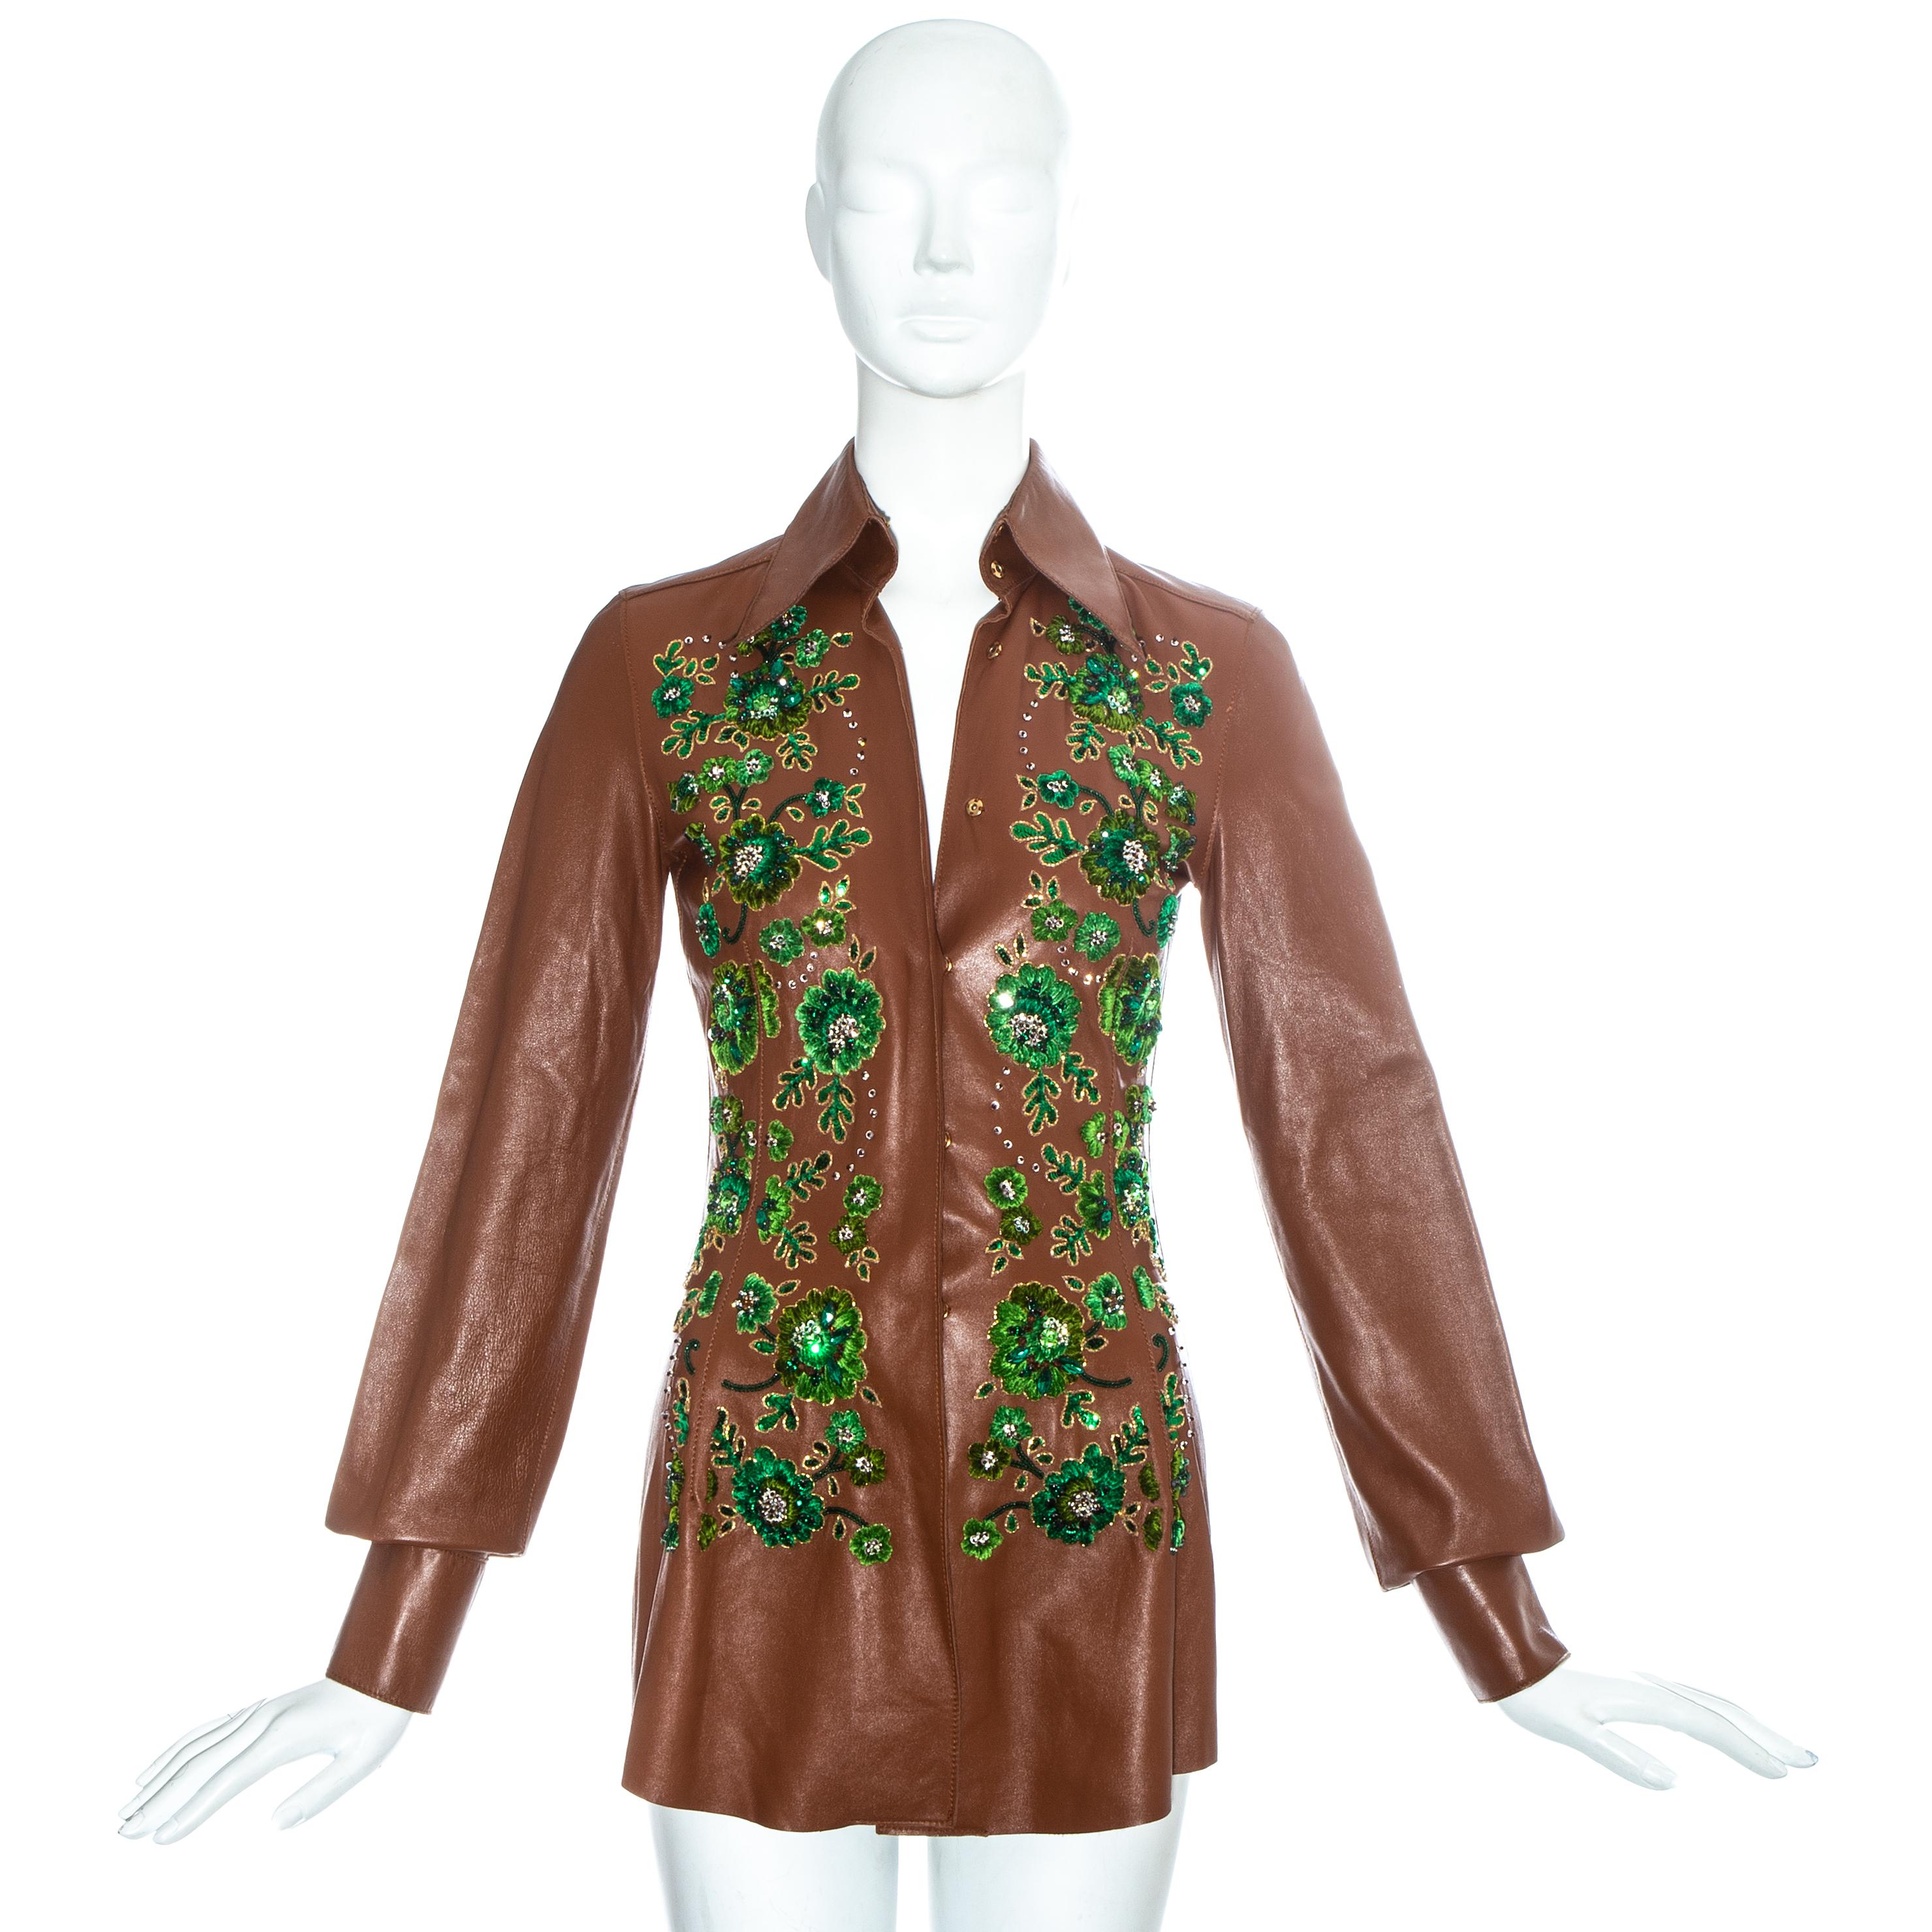 Blouse de style western en cuir marron avec ornements verts Dolce & Gabbana.

Printemps-été 2001